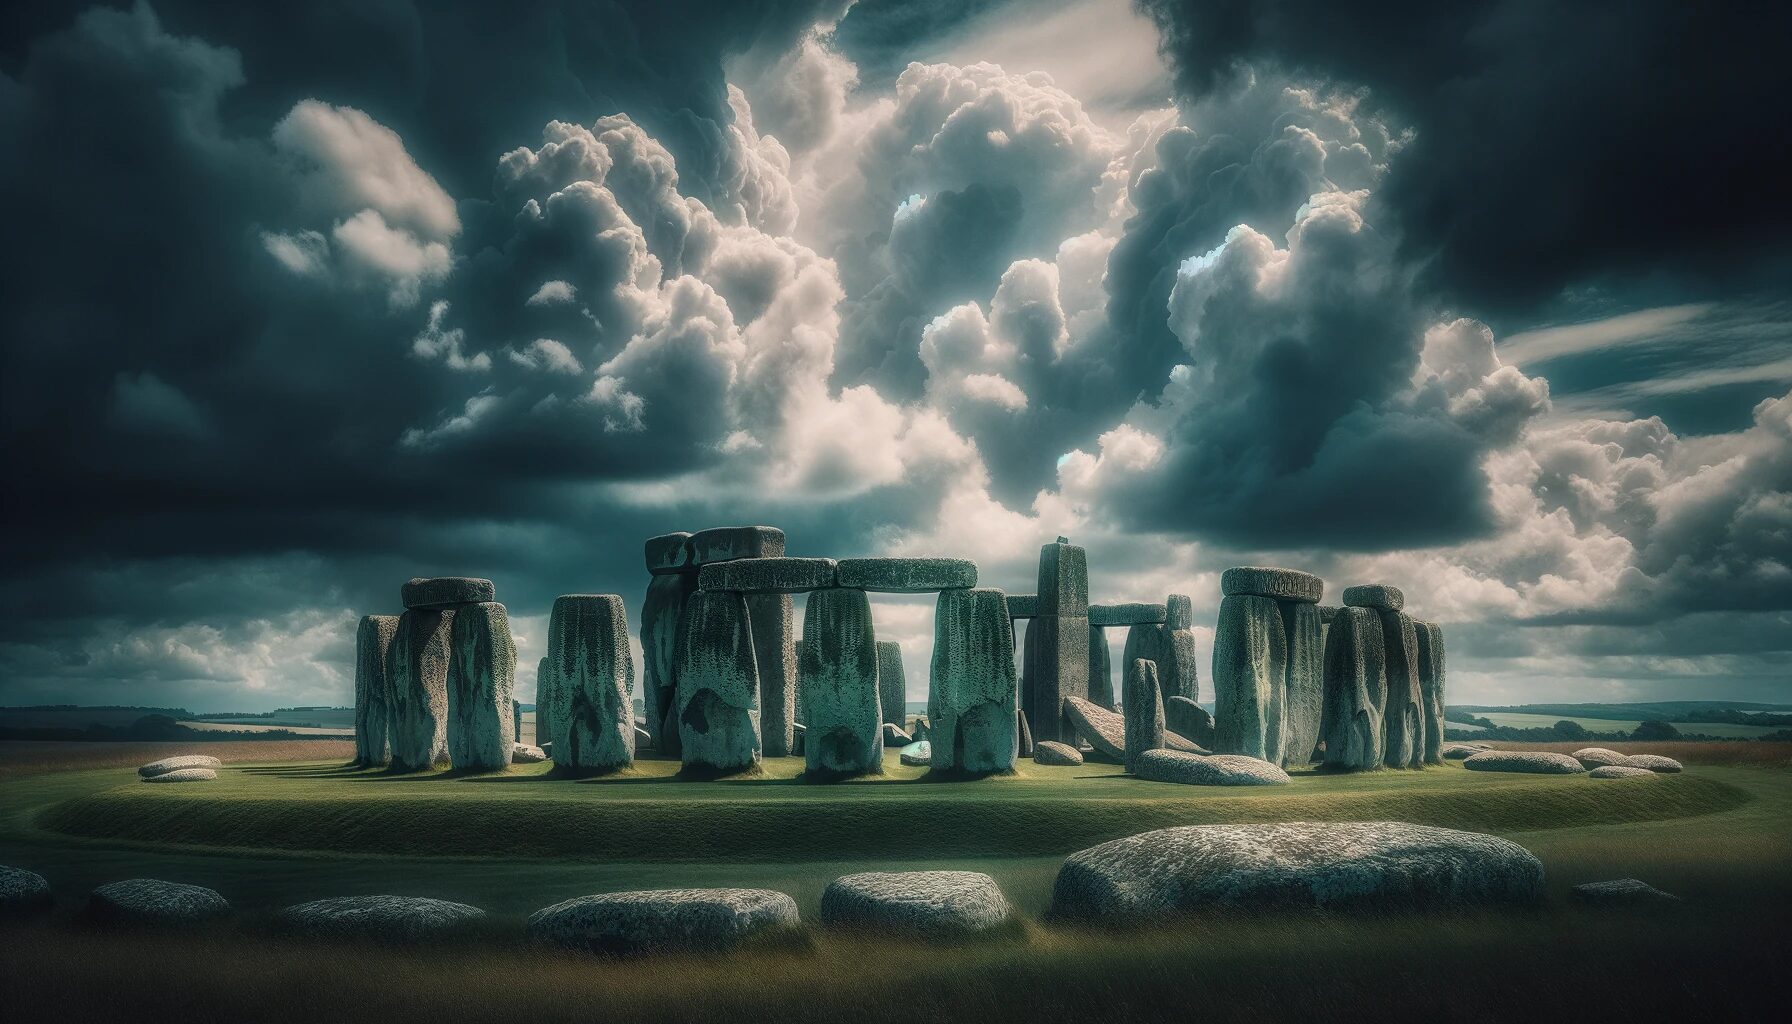 イングランド・雲間に佇むストーンヘンジの神秘 - 無料写真素材